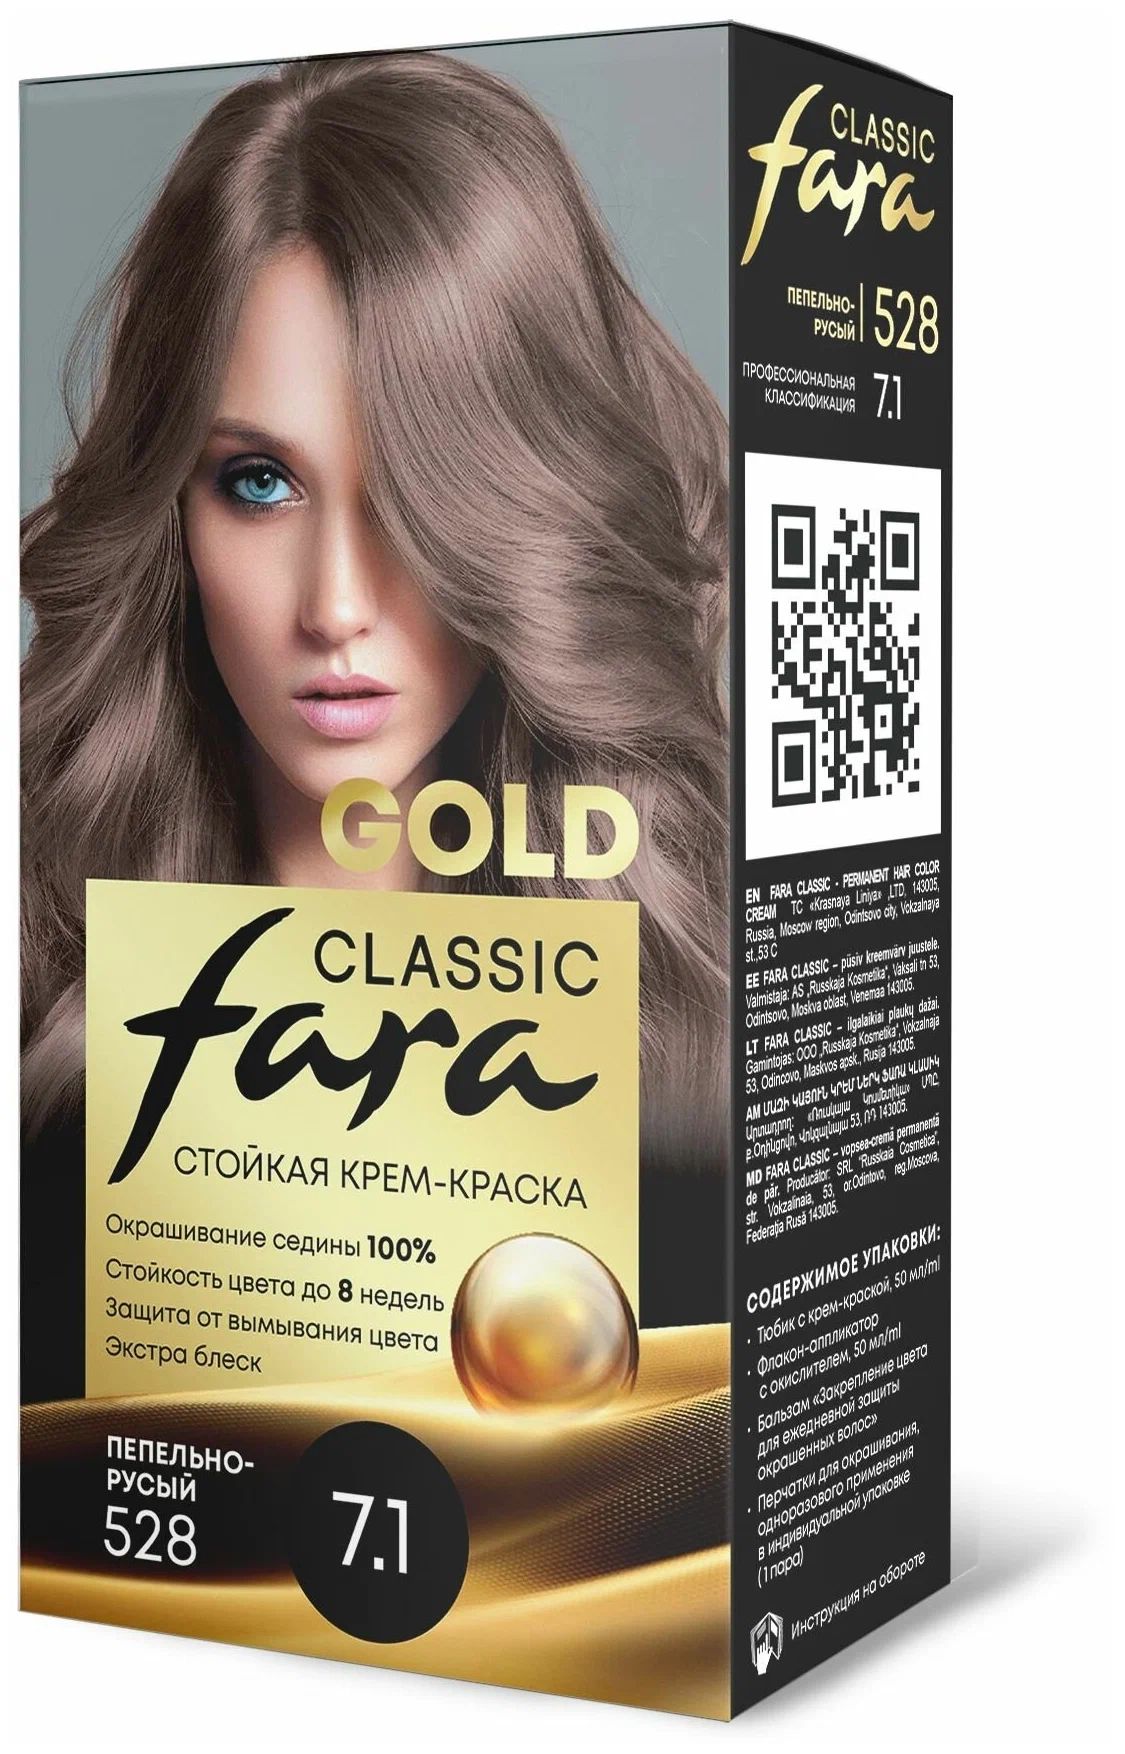 Крем-краска для волос Fara Classic Gold 528 пепельно-русый 7.1, 140 г конек горбунок русская сказка в трех частях ершов п